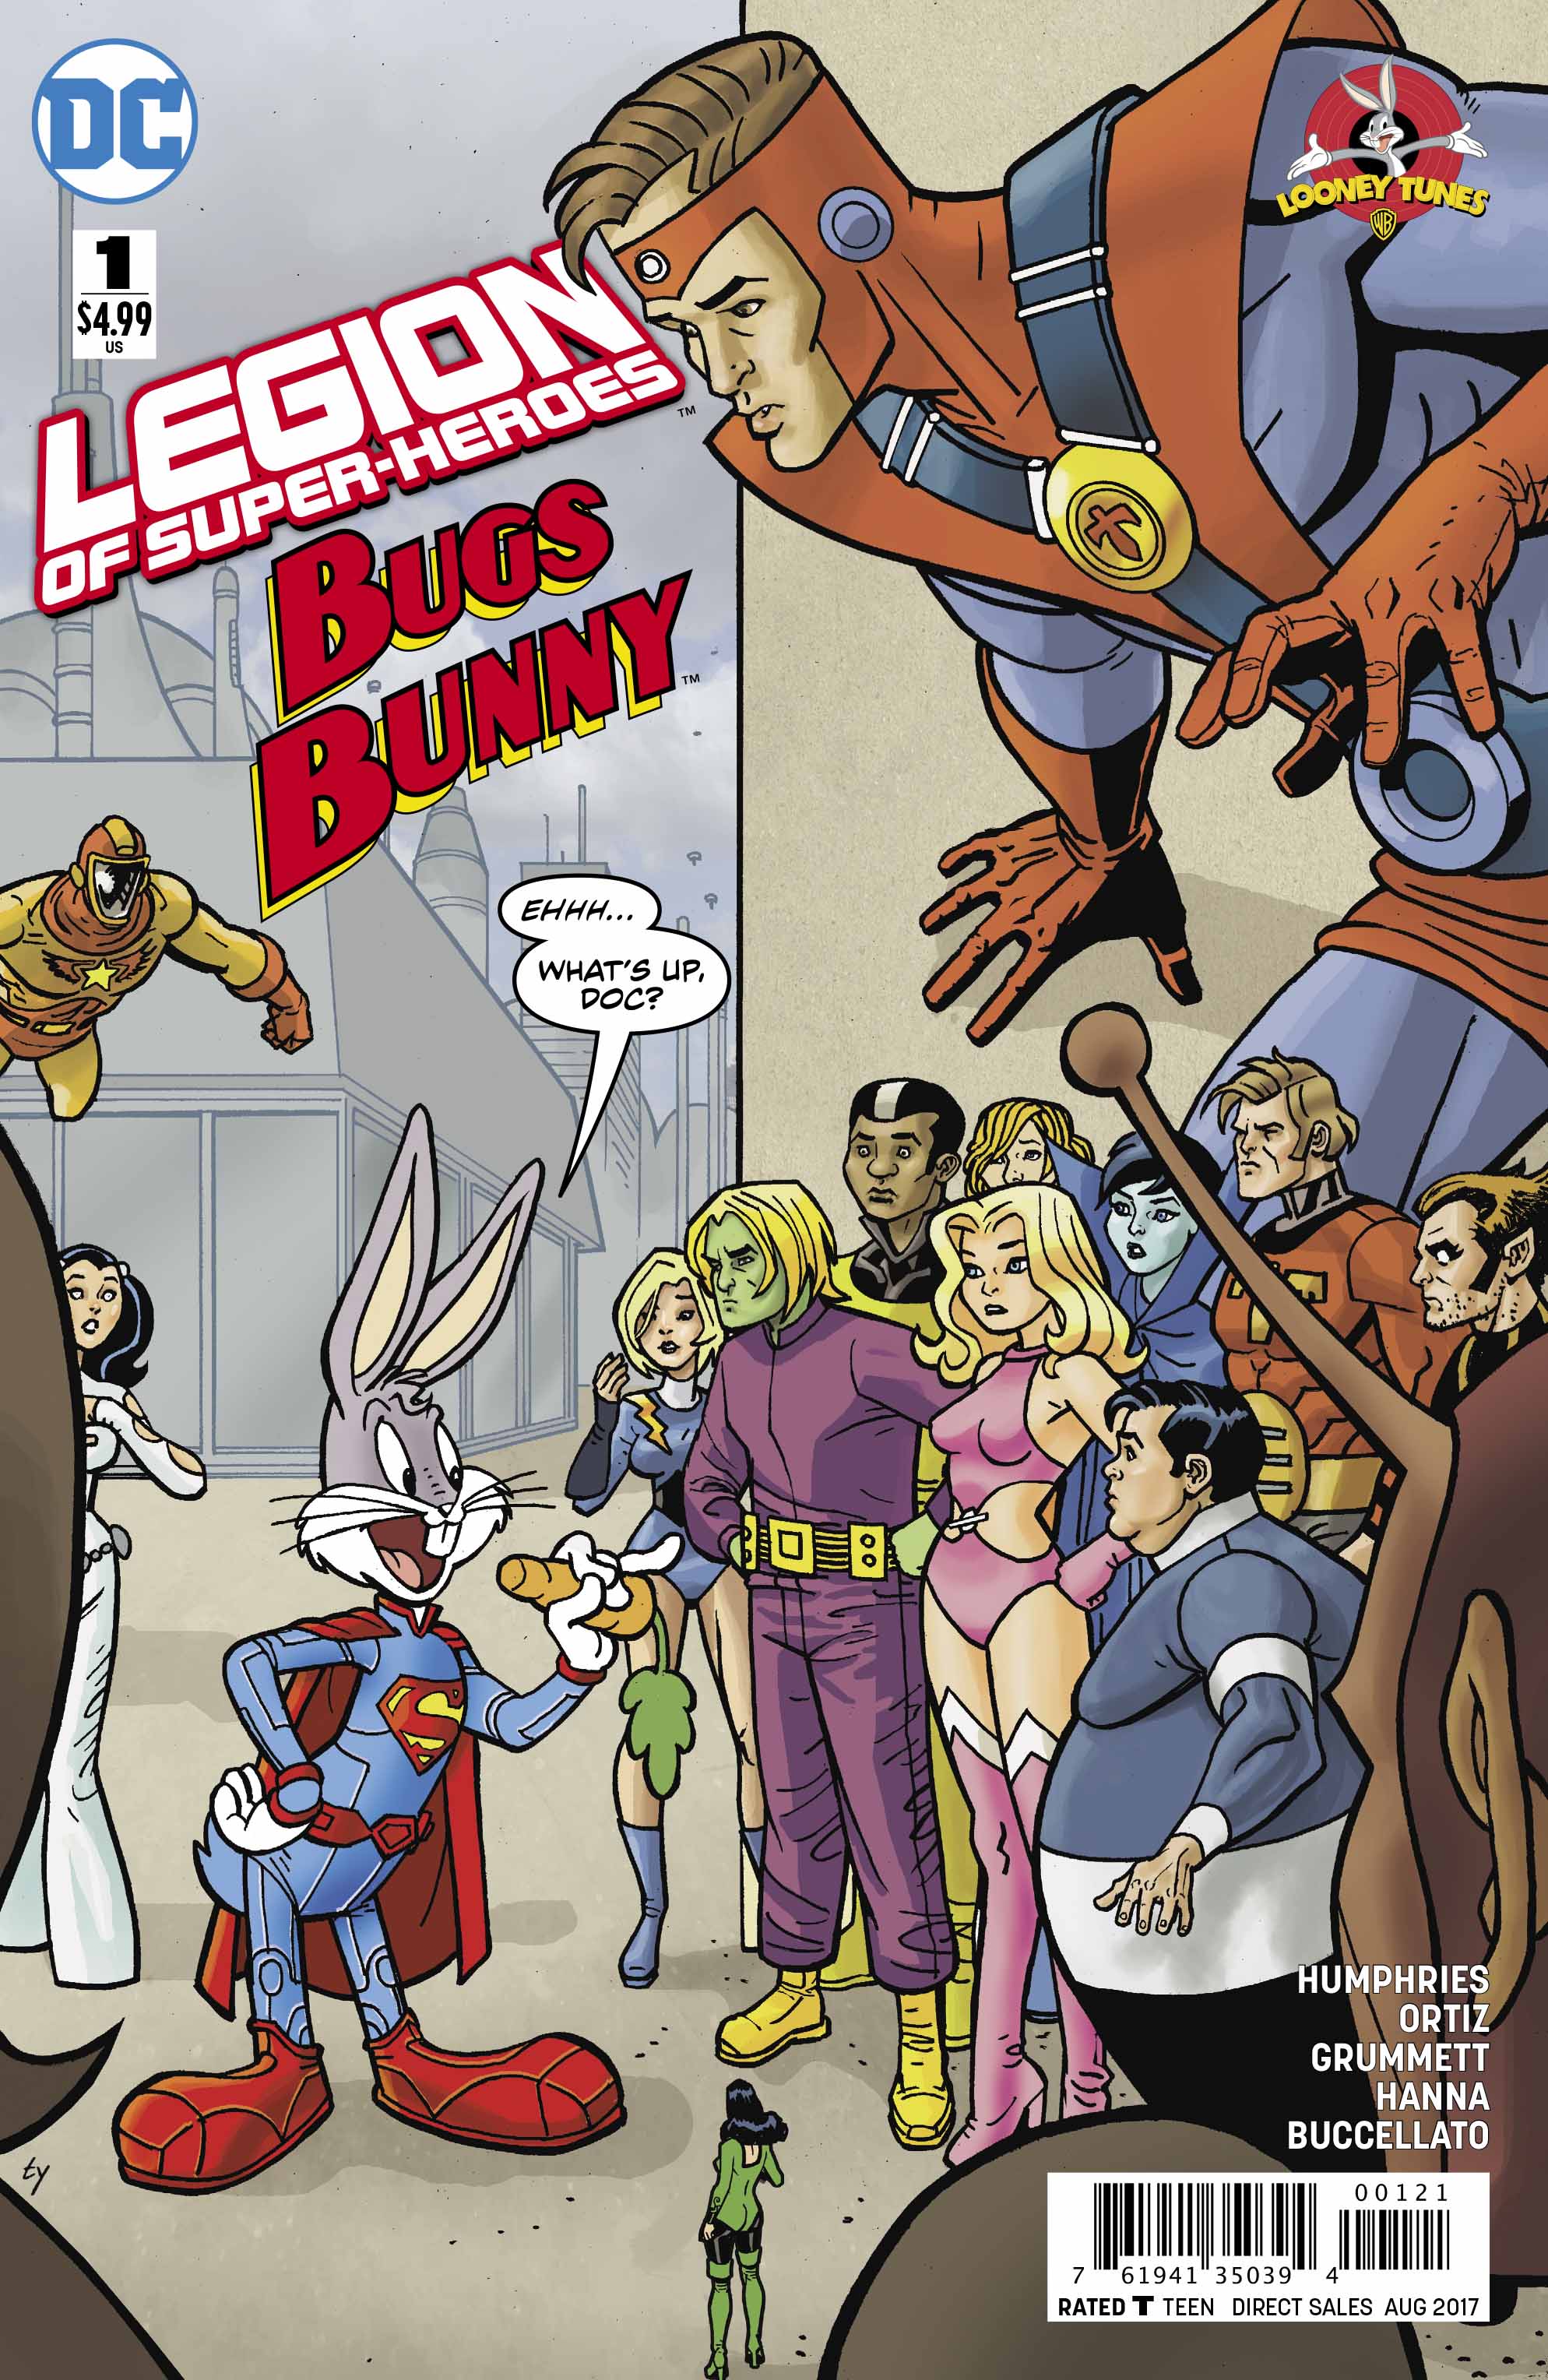 Legion of Super-heroes Bugs Bunny - DC Comics News